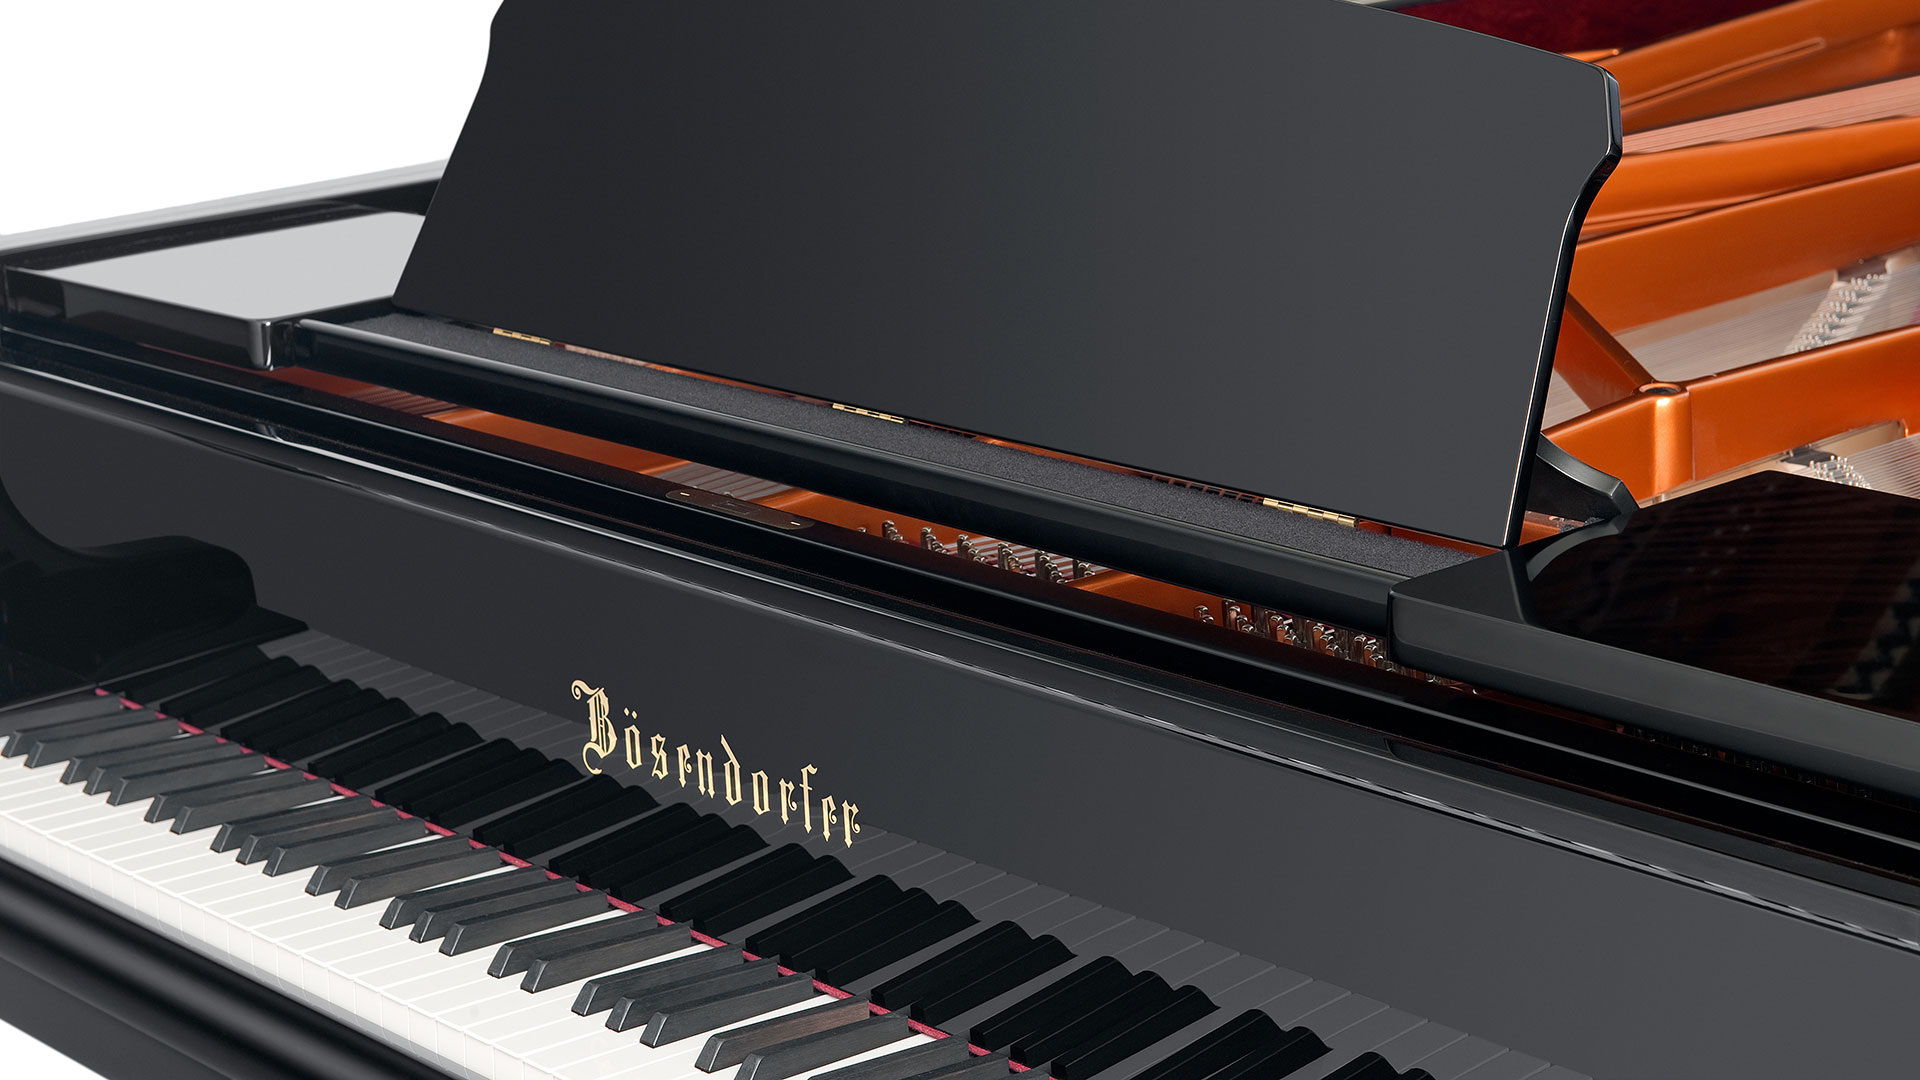 Bosendorfer piano Model 280-vc grand piano